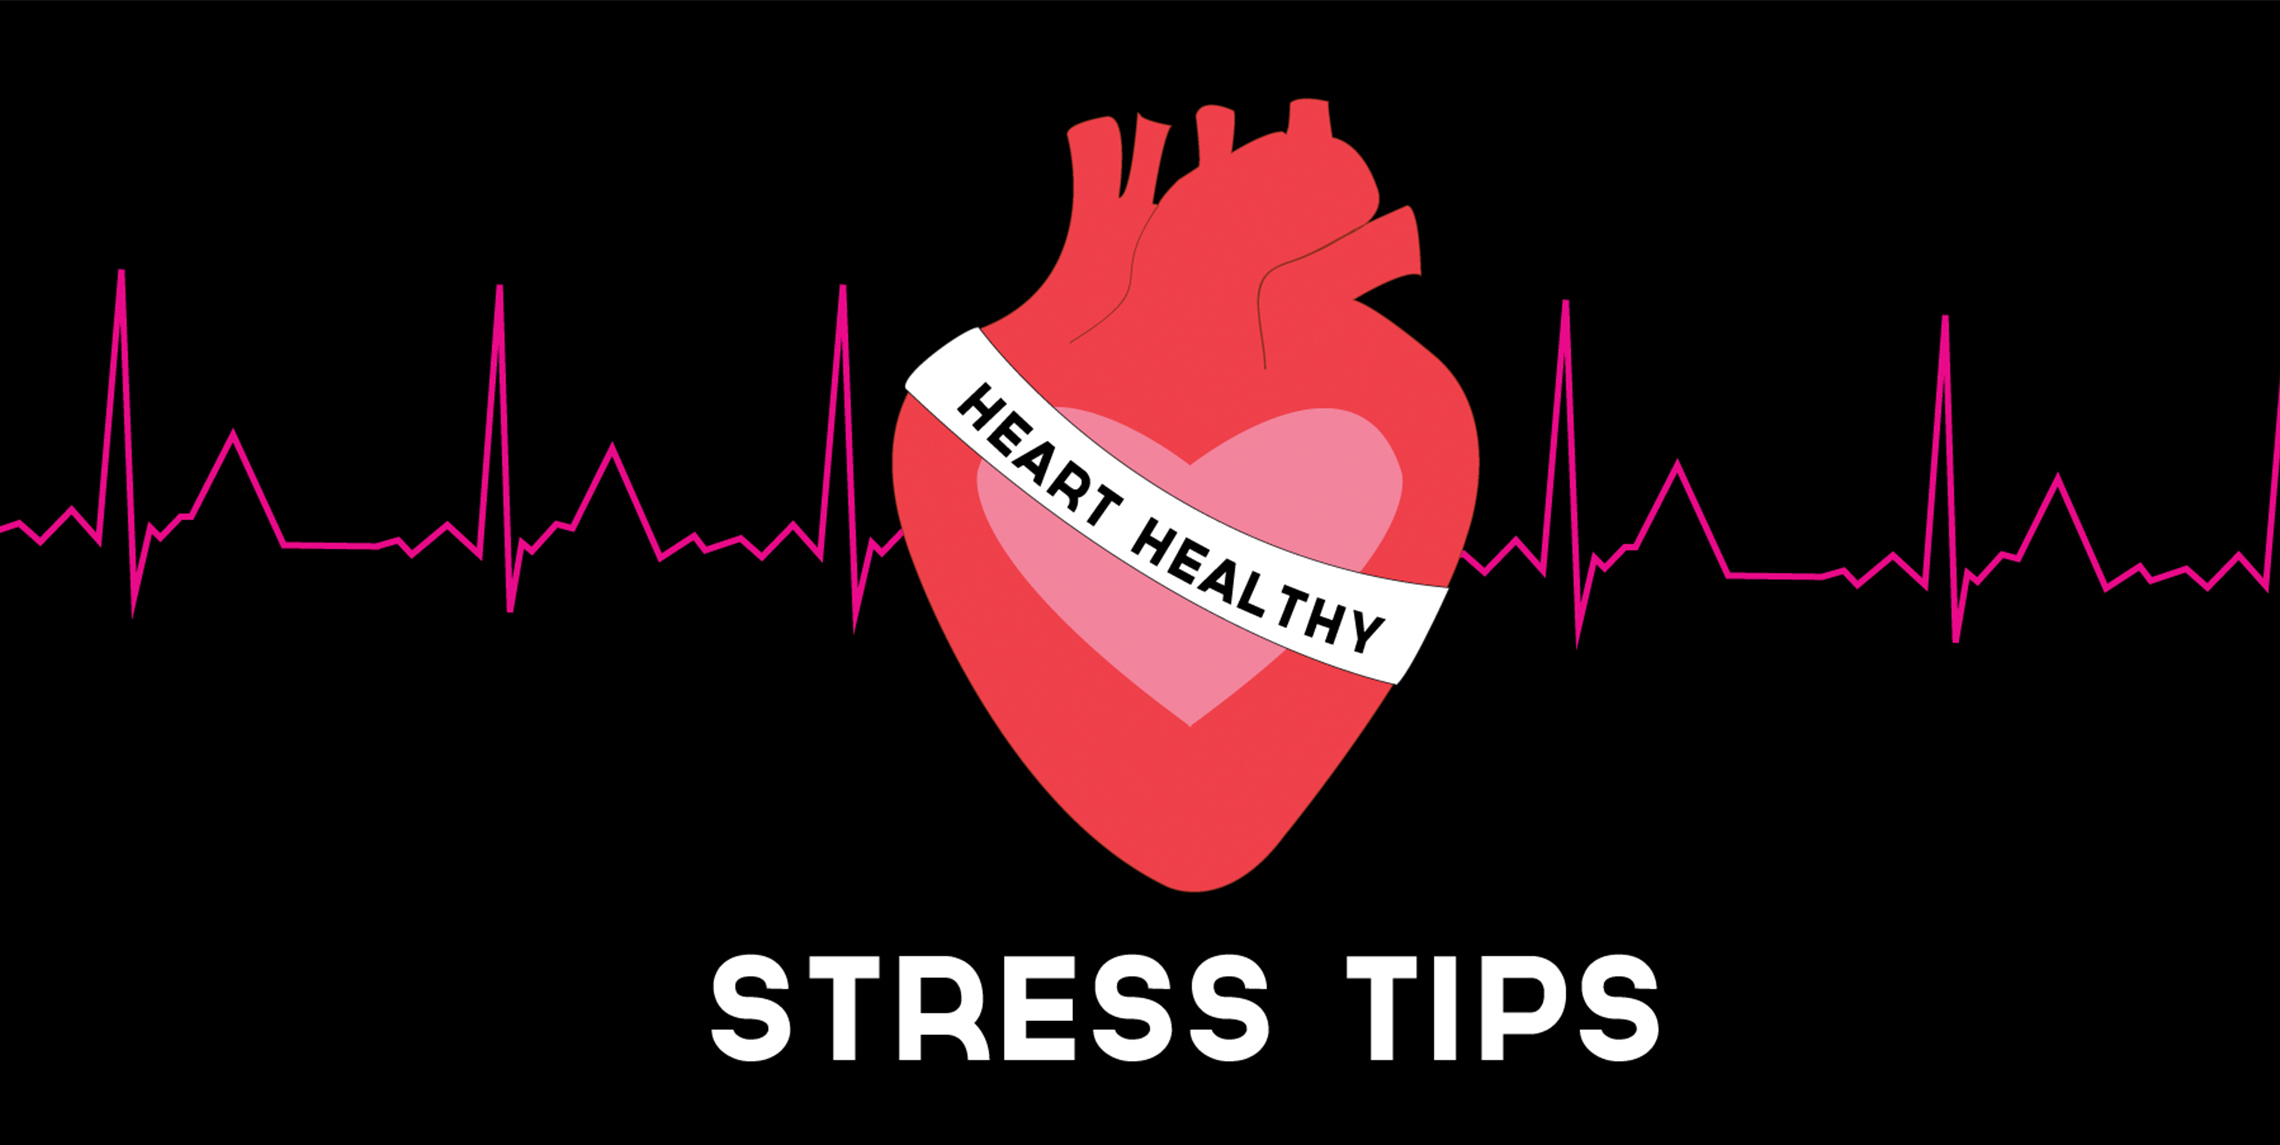 Heart Healthy Stress Tips